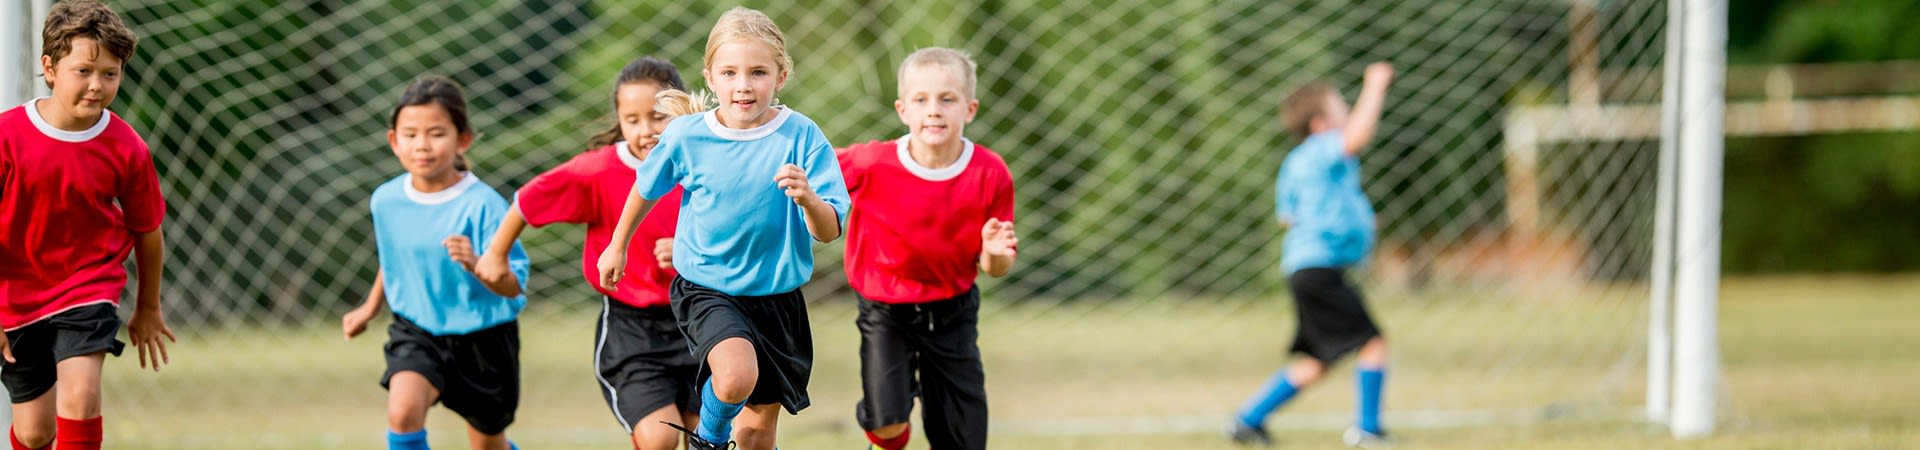 De juiste hobby zoeken – sporten voor kinderen.